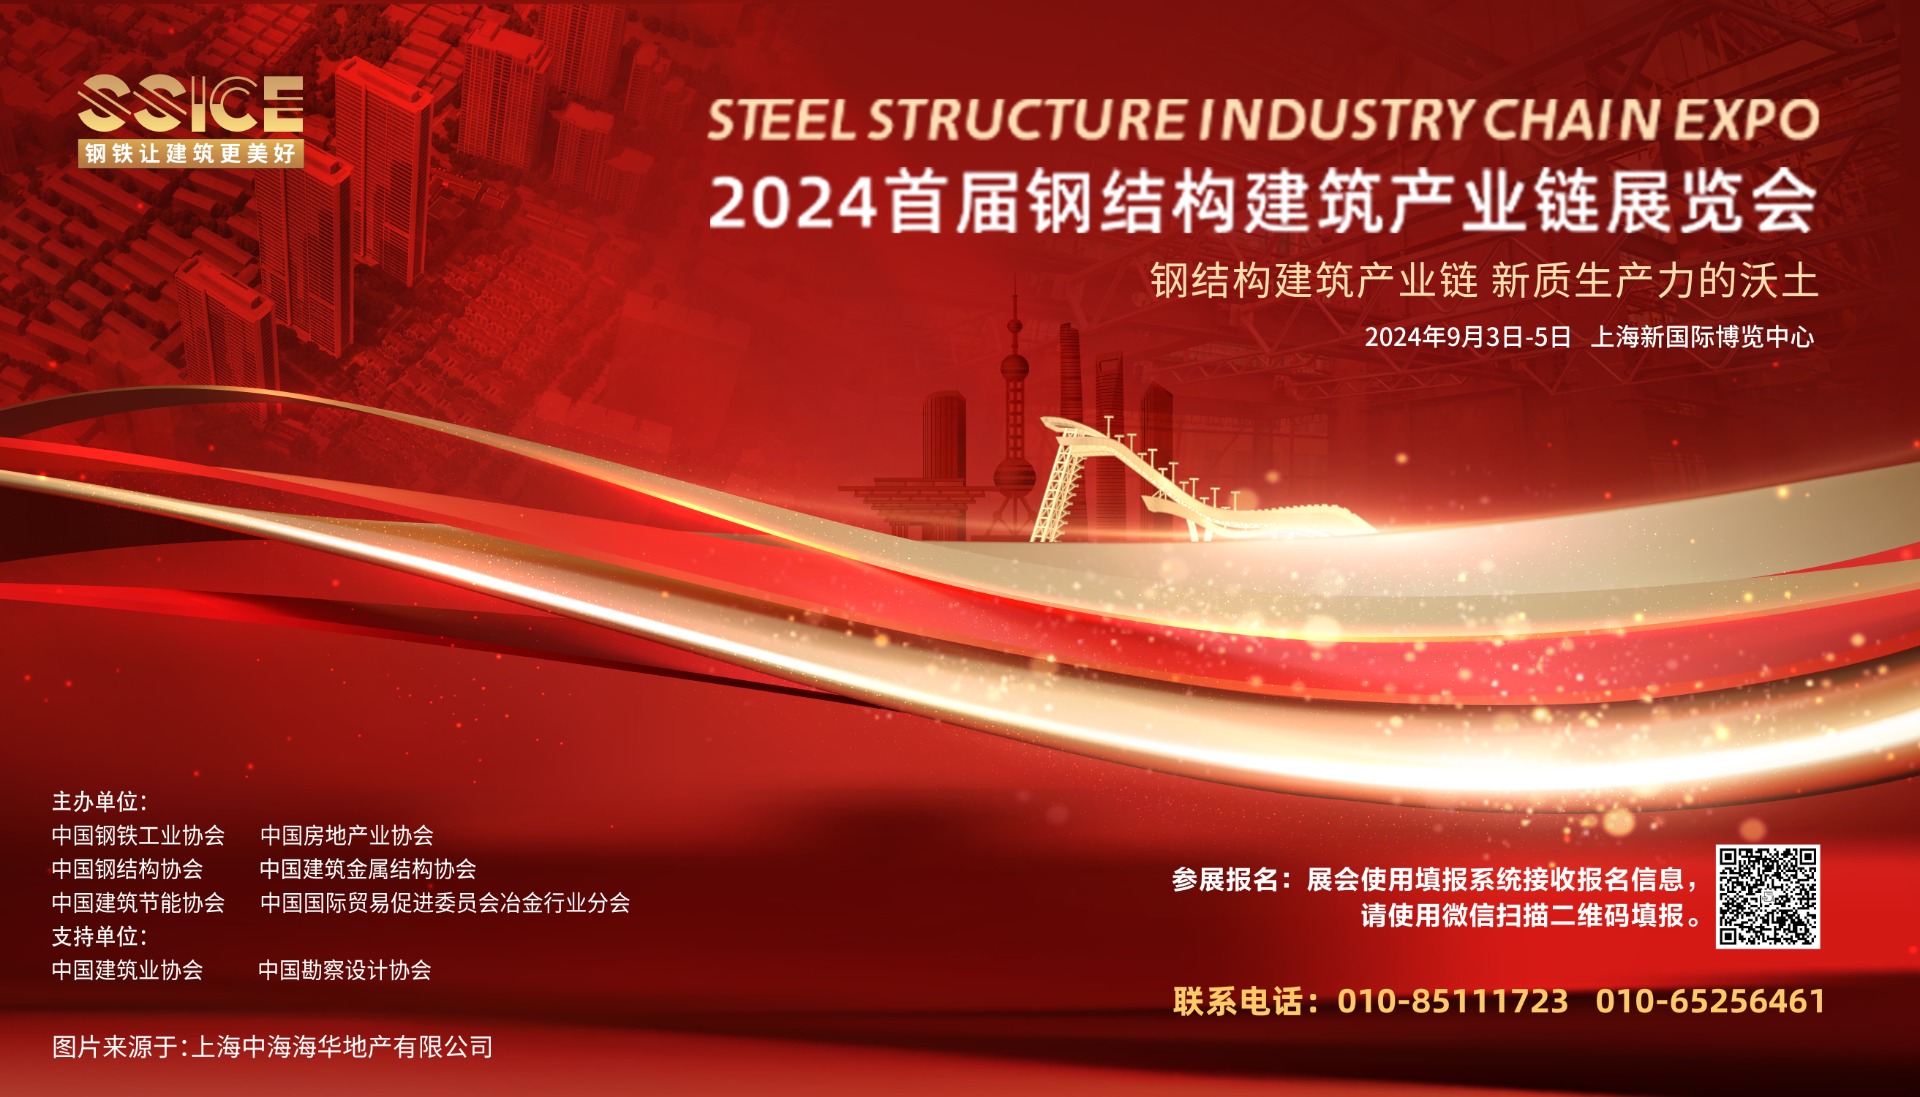 关于邀请参加“首届钢结构建筑产业链展览会”的通知